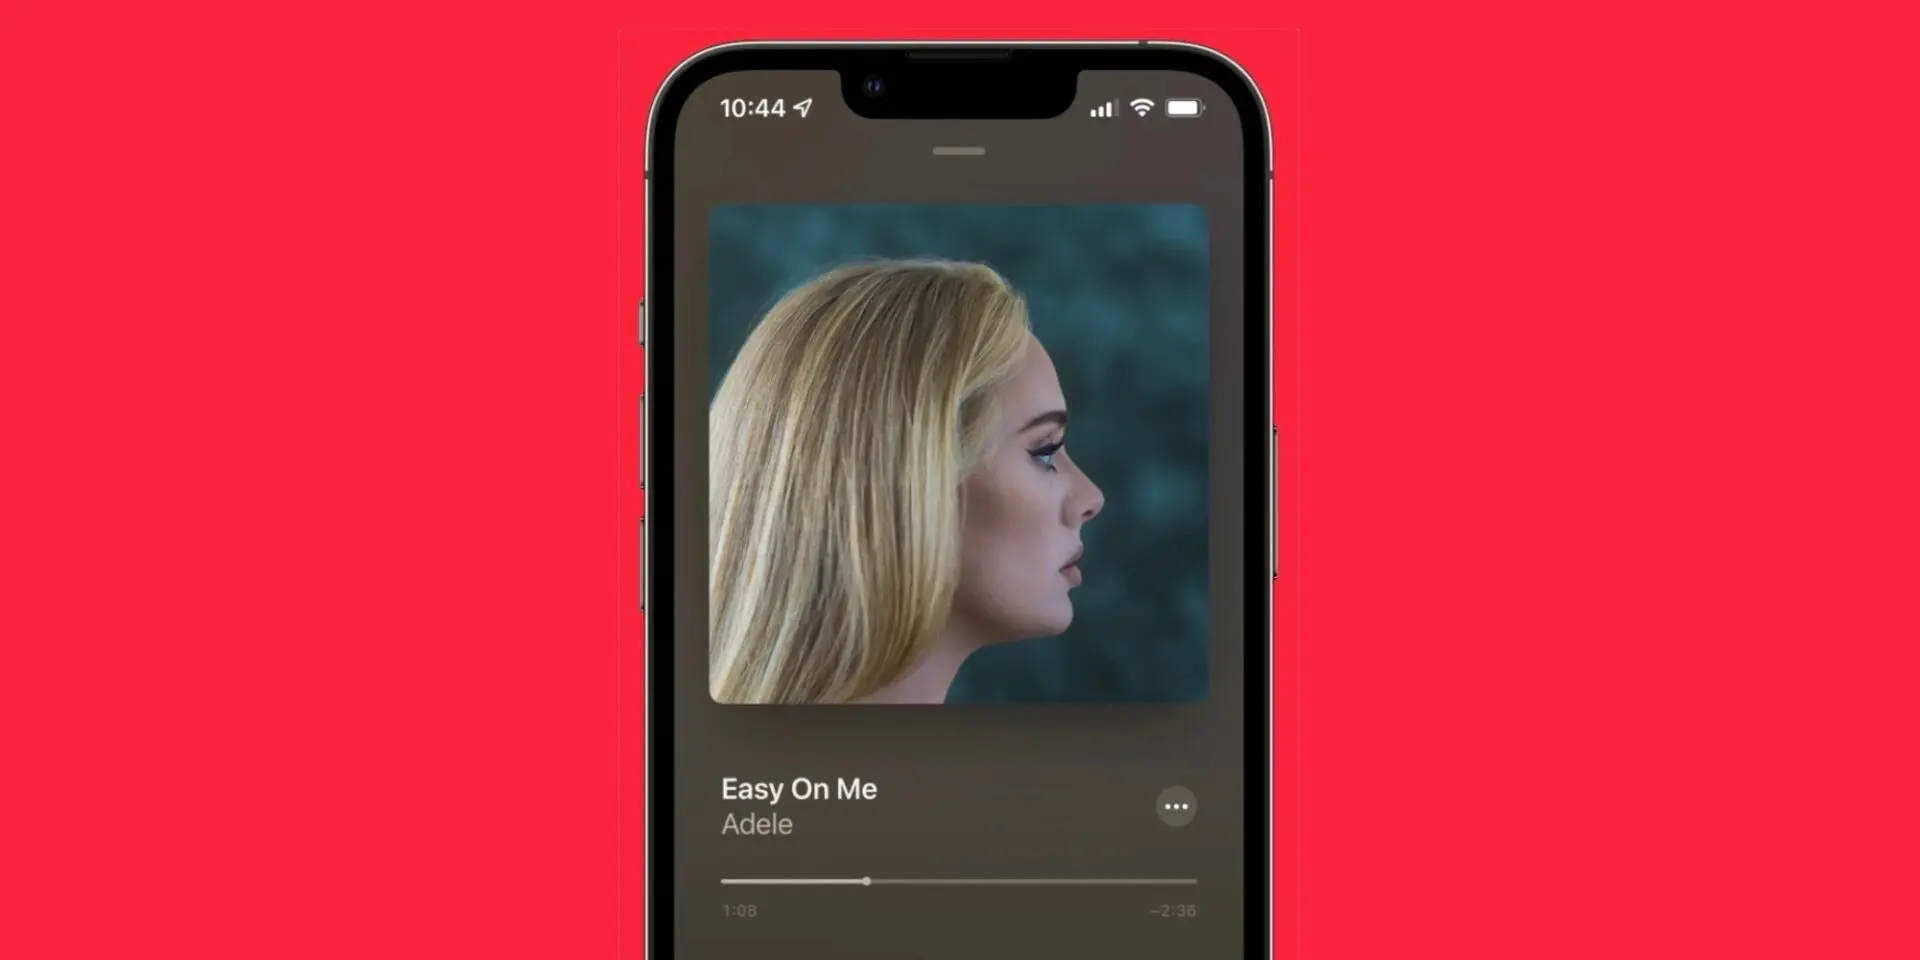 Album 30 của Adele là Album được quan tâm nhất trên Apple Music